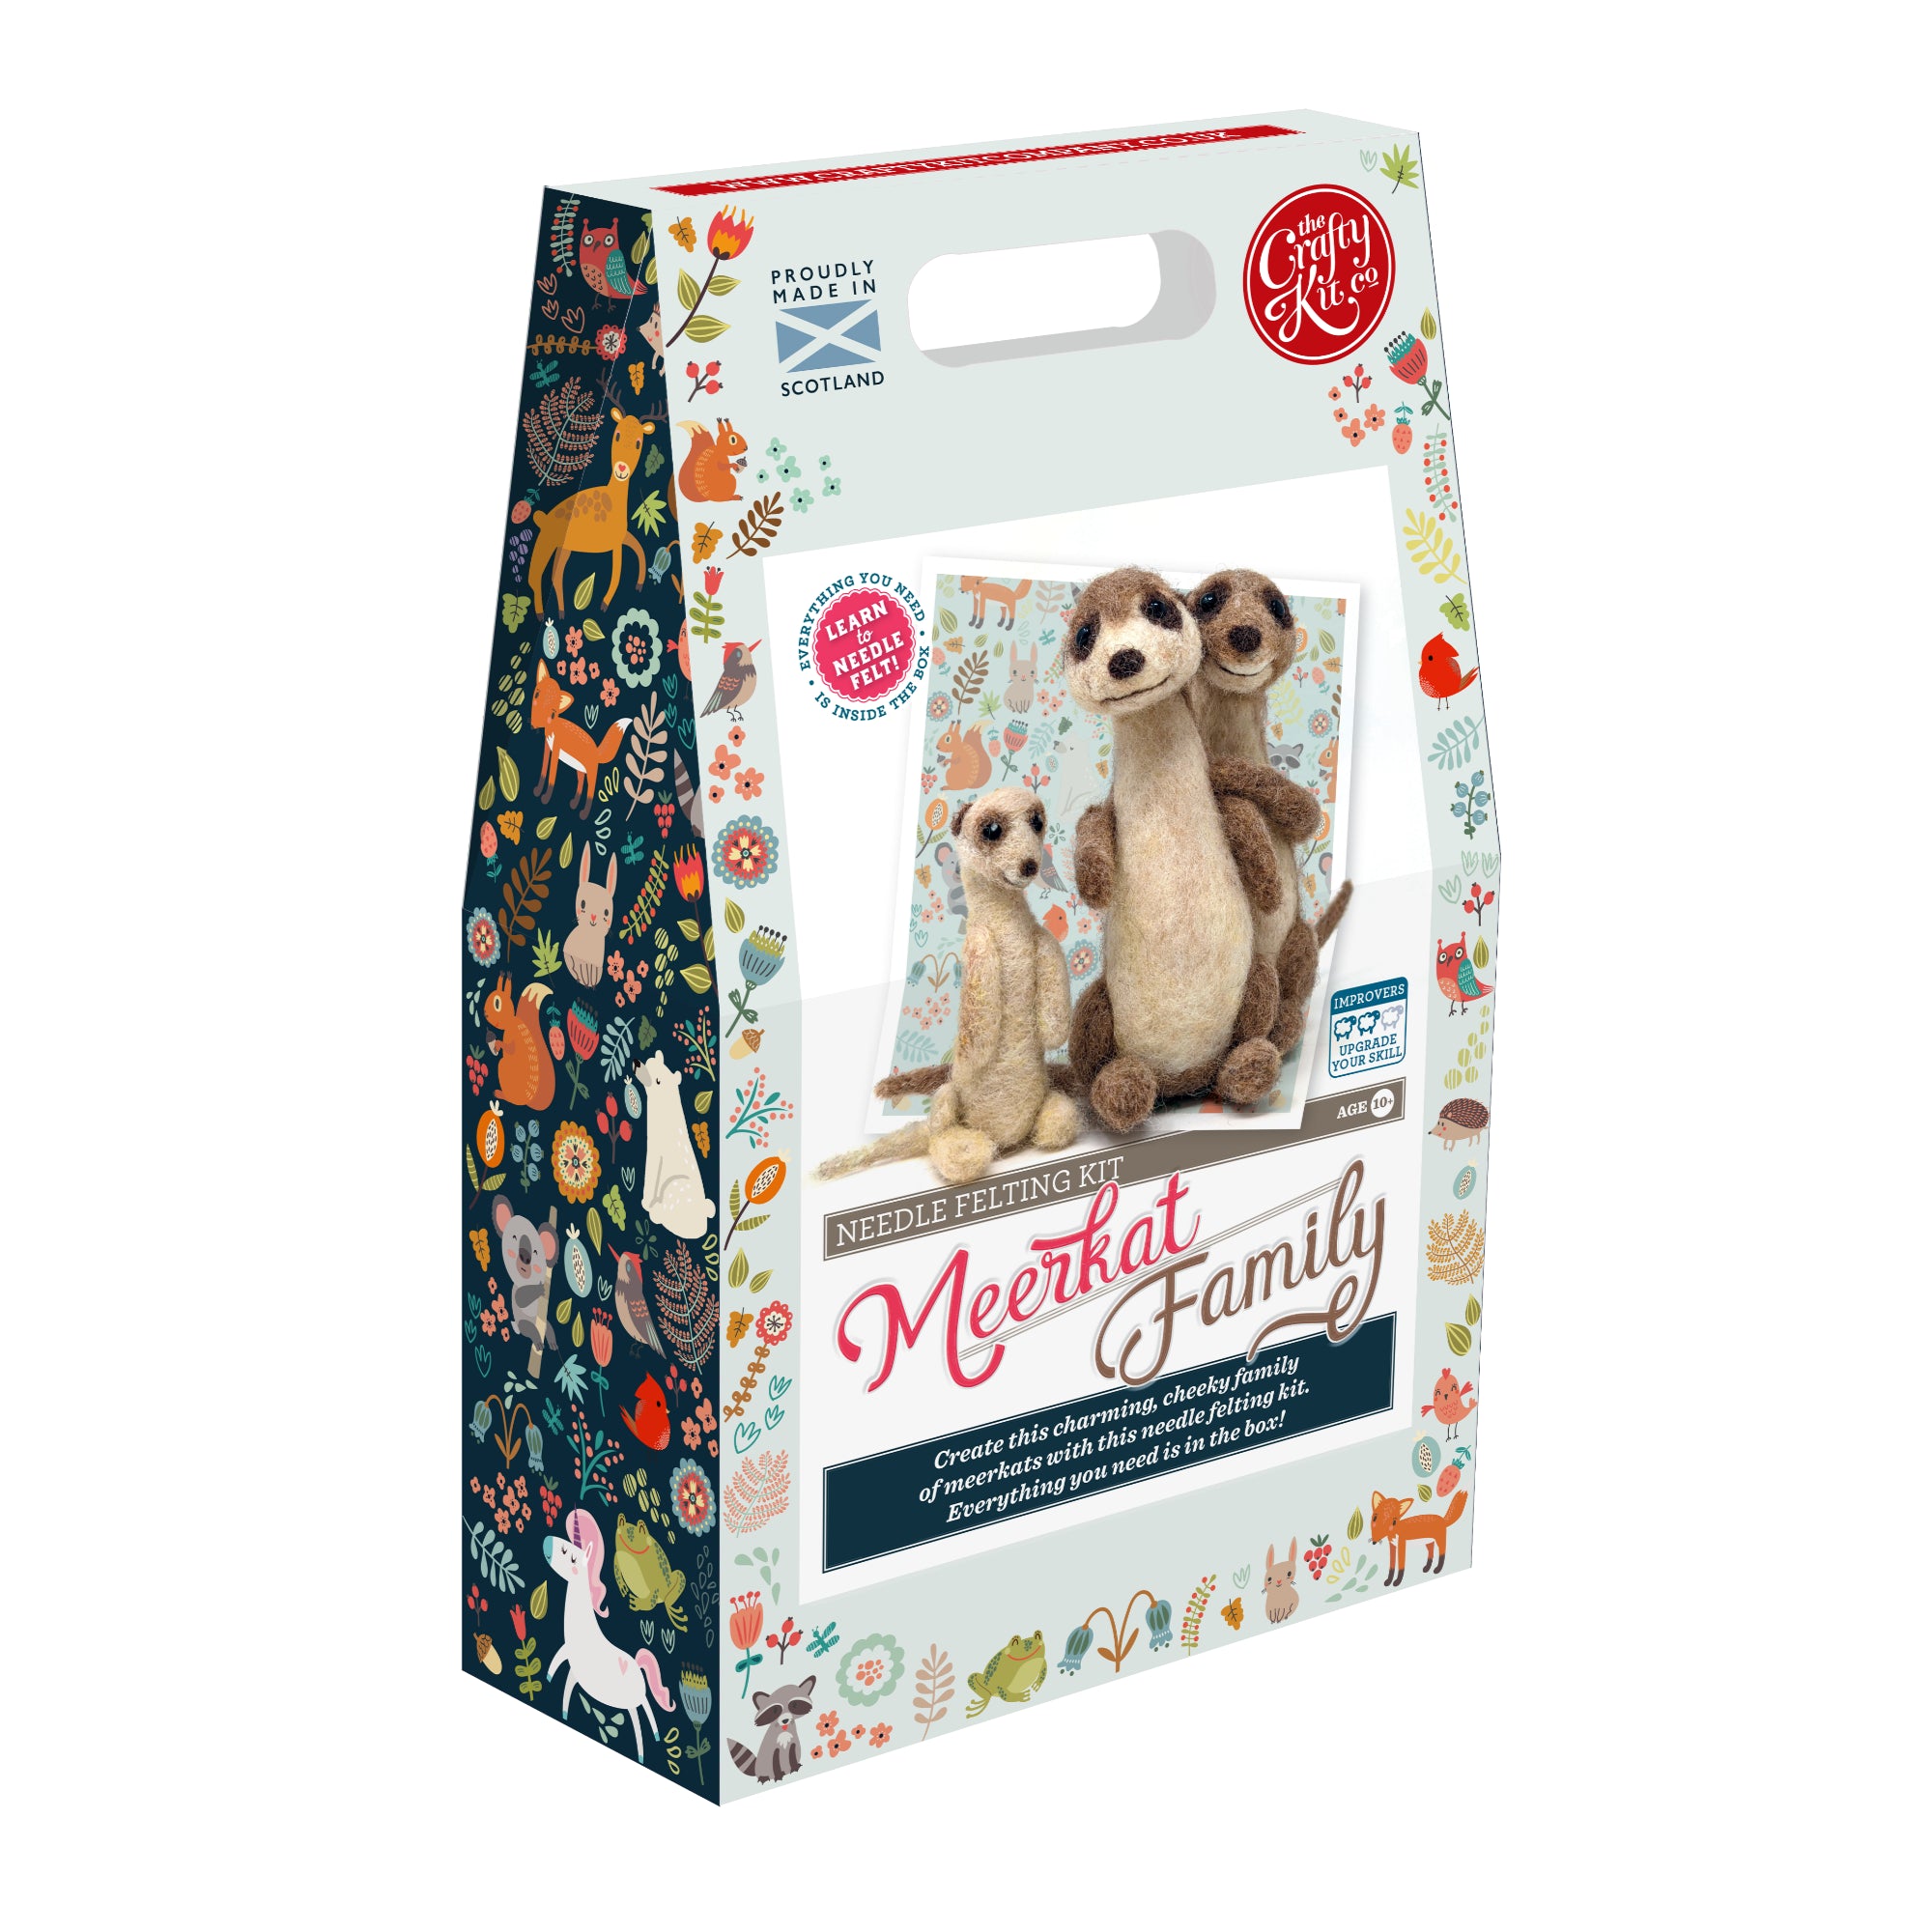 Meerkat Family Needle Felting Kit